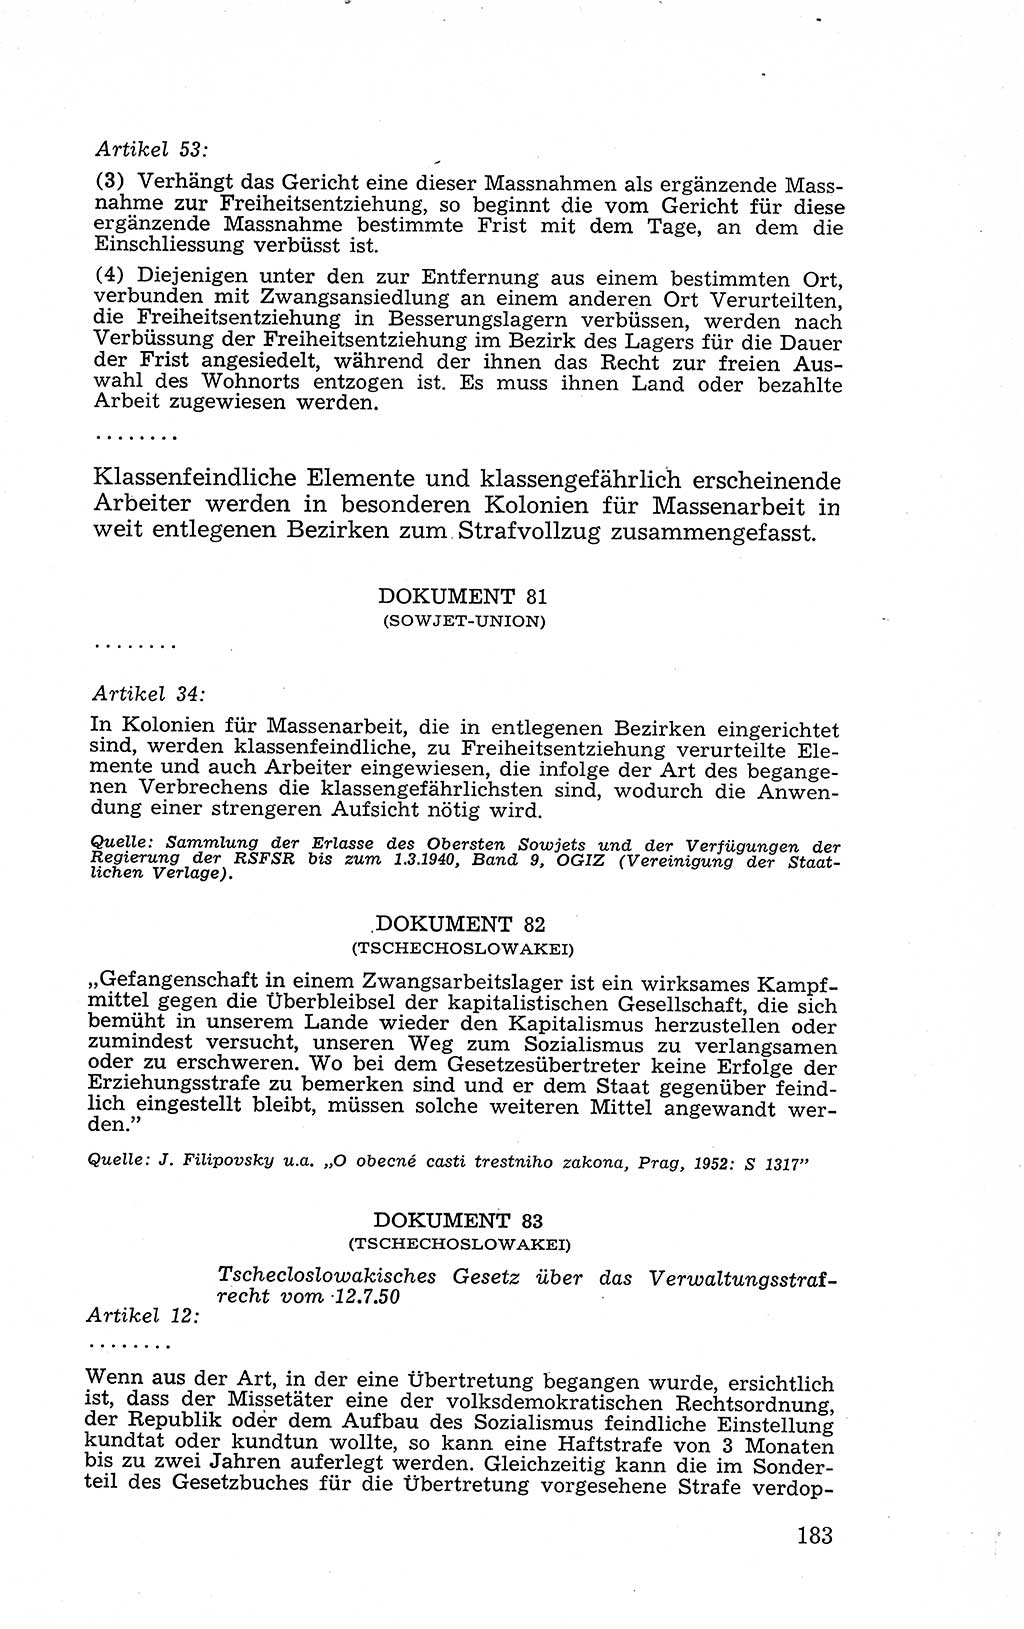 Recht in Fesseln, Dokumente, Internationale Juristen-Kommission [Bundesrepublik Deutschland (BRD)] 1955, Seite 183 (R. Dok. IJK BRD 1955, S. 183)